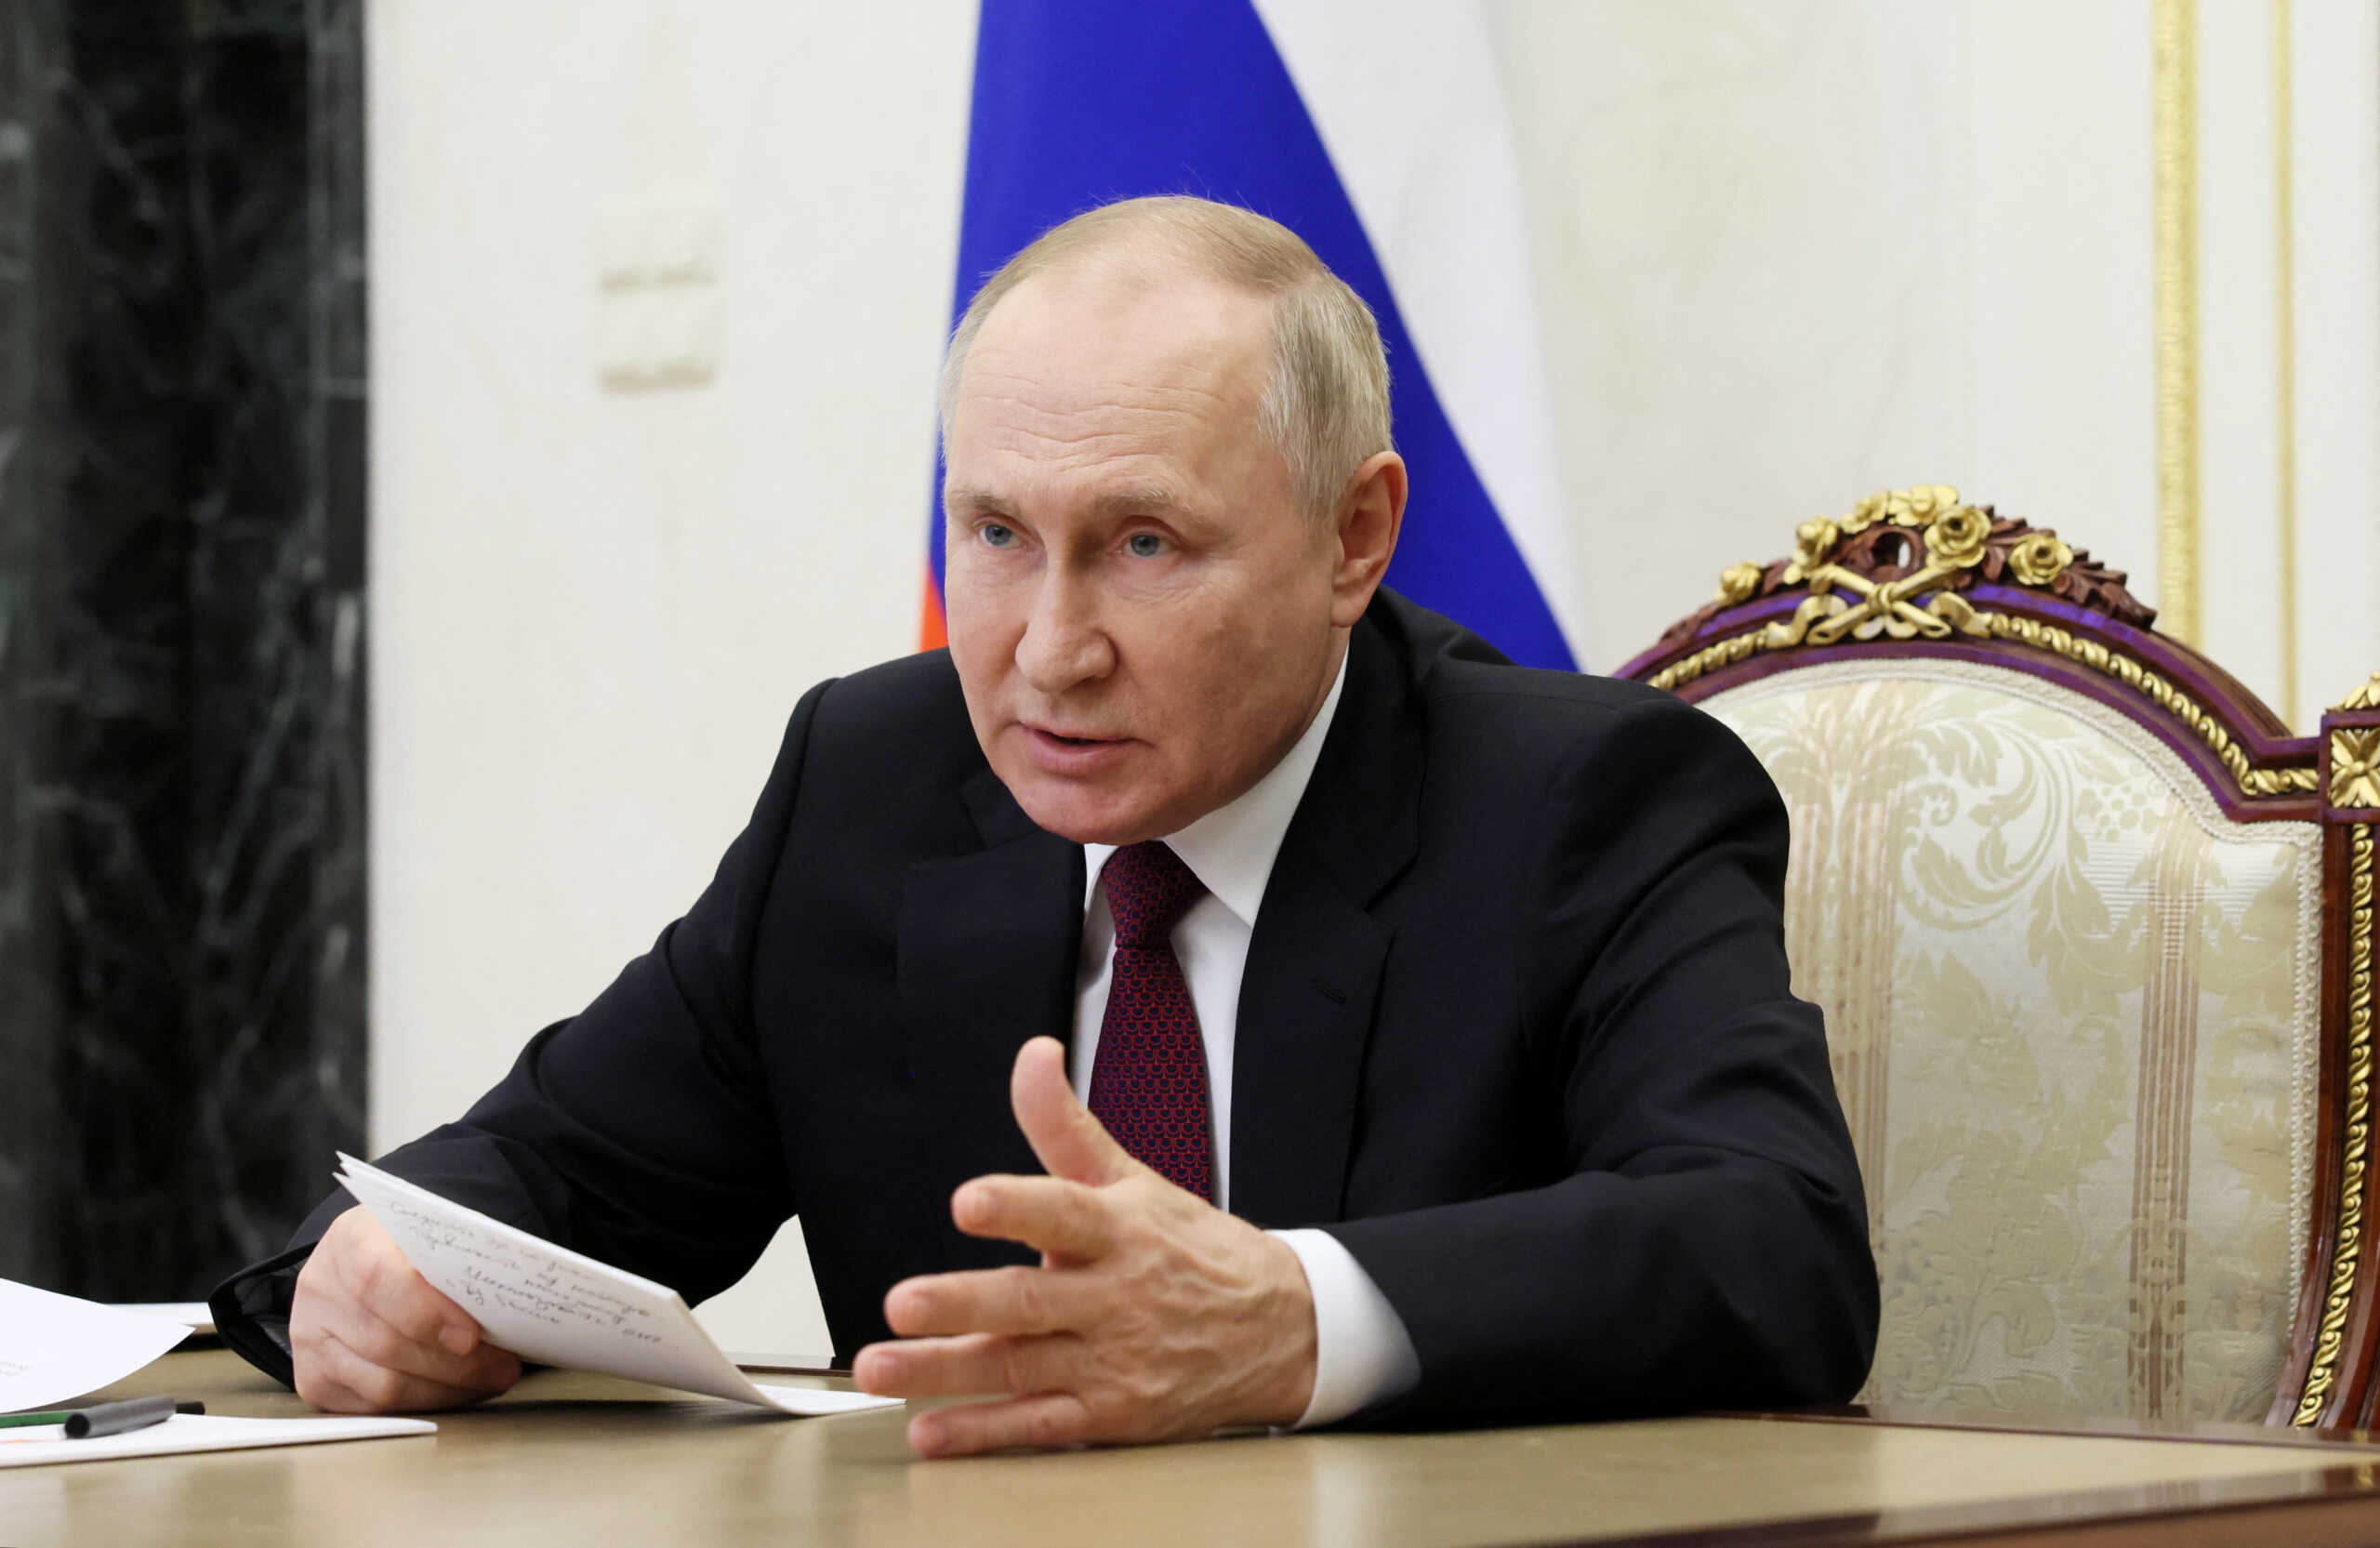 Πούτιν: Το πλαφόν στην τιμή του ρωσικού πετρελαίου θα οδηγούσε σε «σοβαρές συνέπειες» για τη διεθνή αγορά